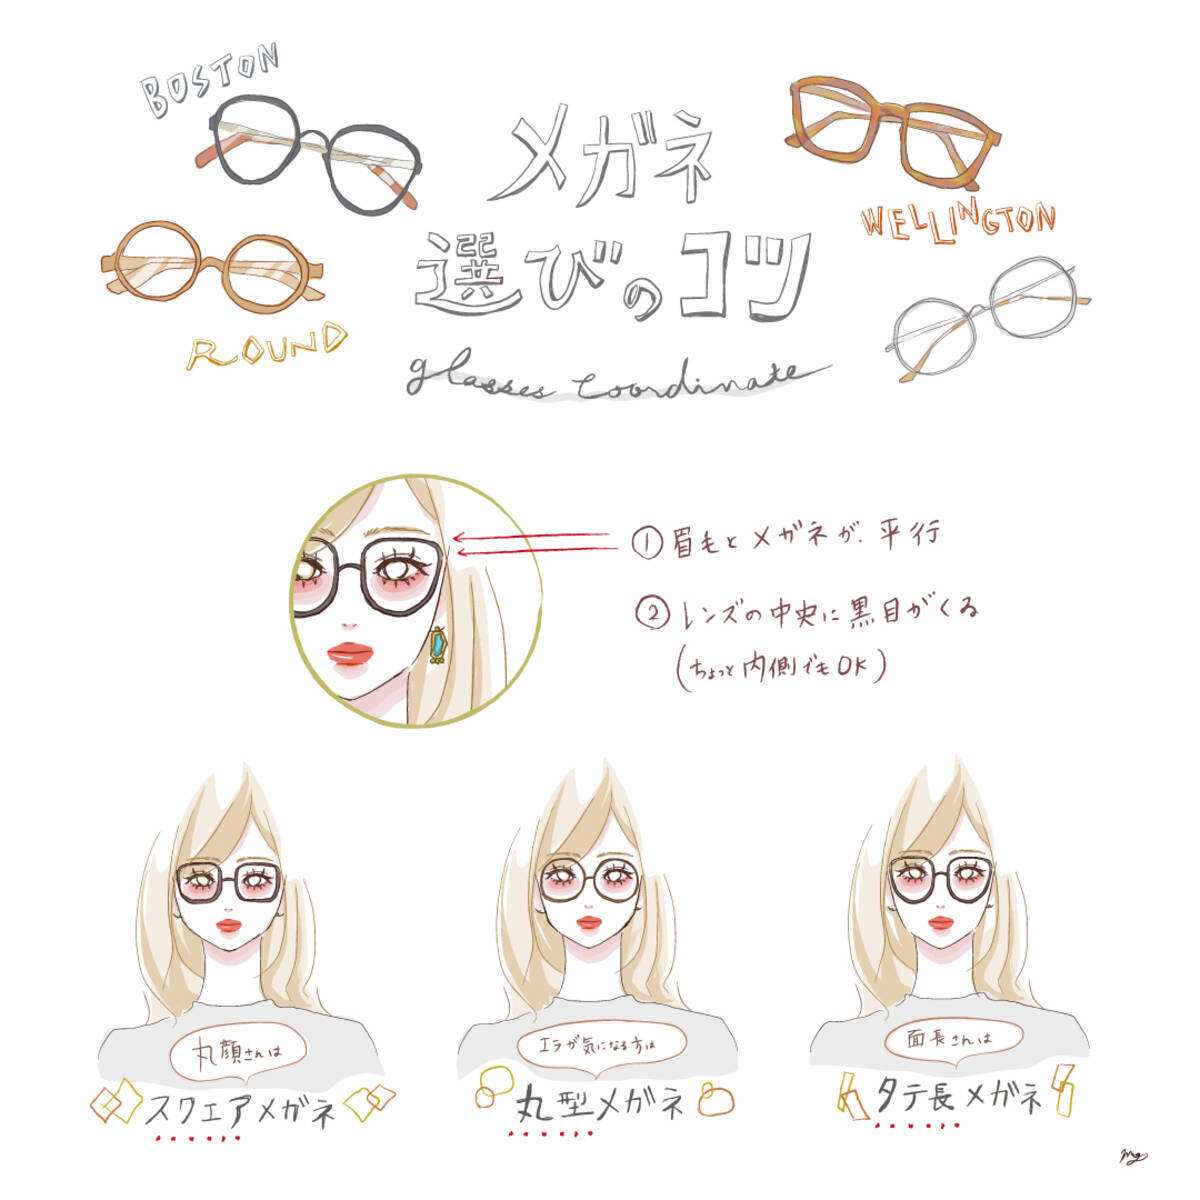 自分に合ったメガネを見つけておしゃれに イメージ別メガネコーデ イラスト ローリエプレス